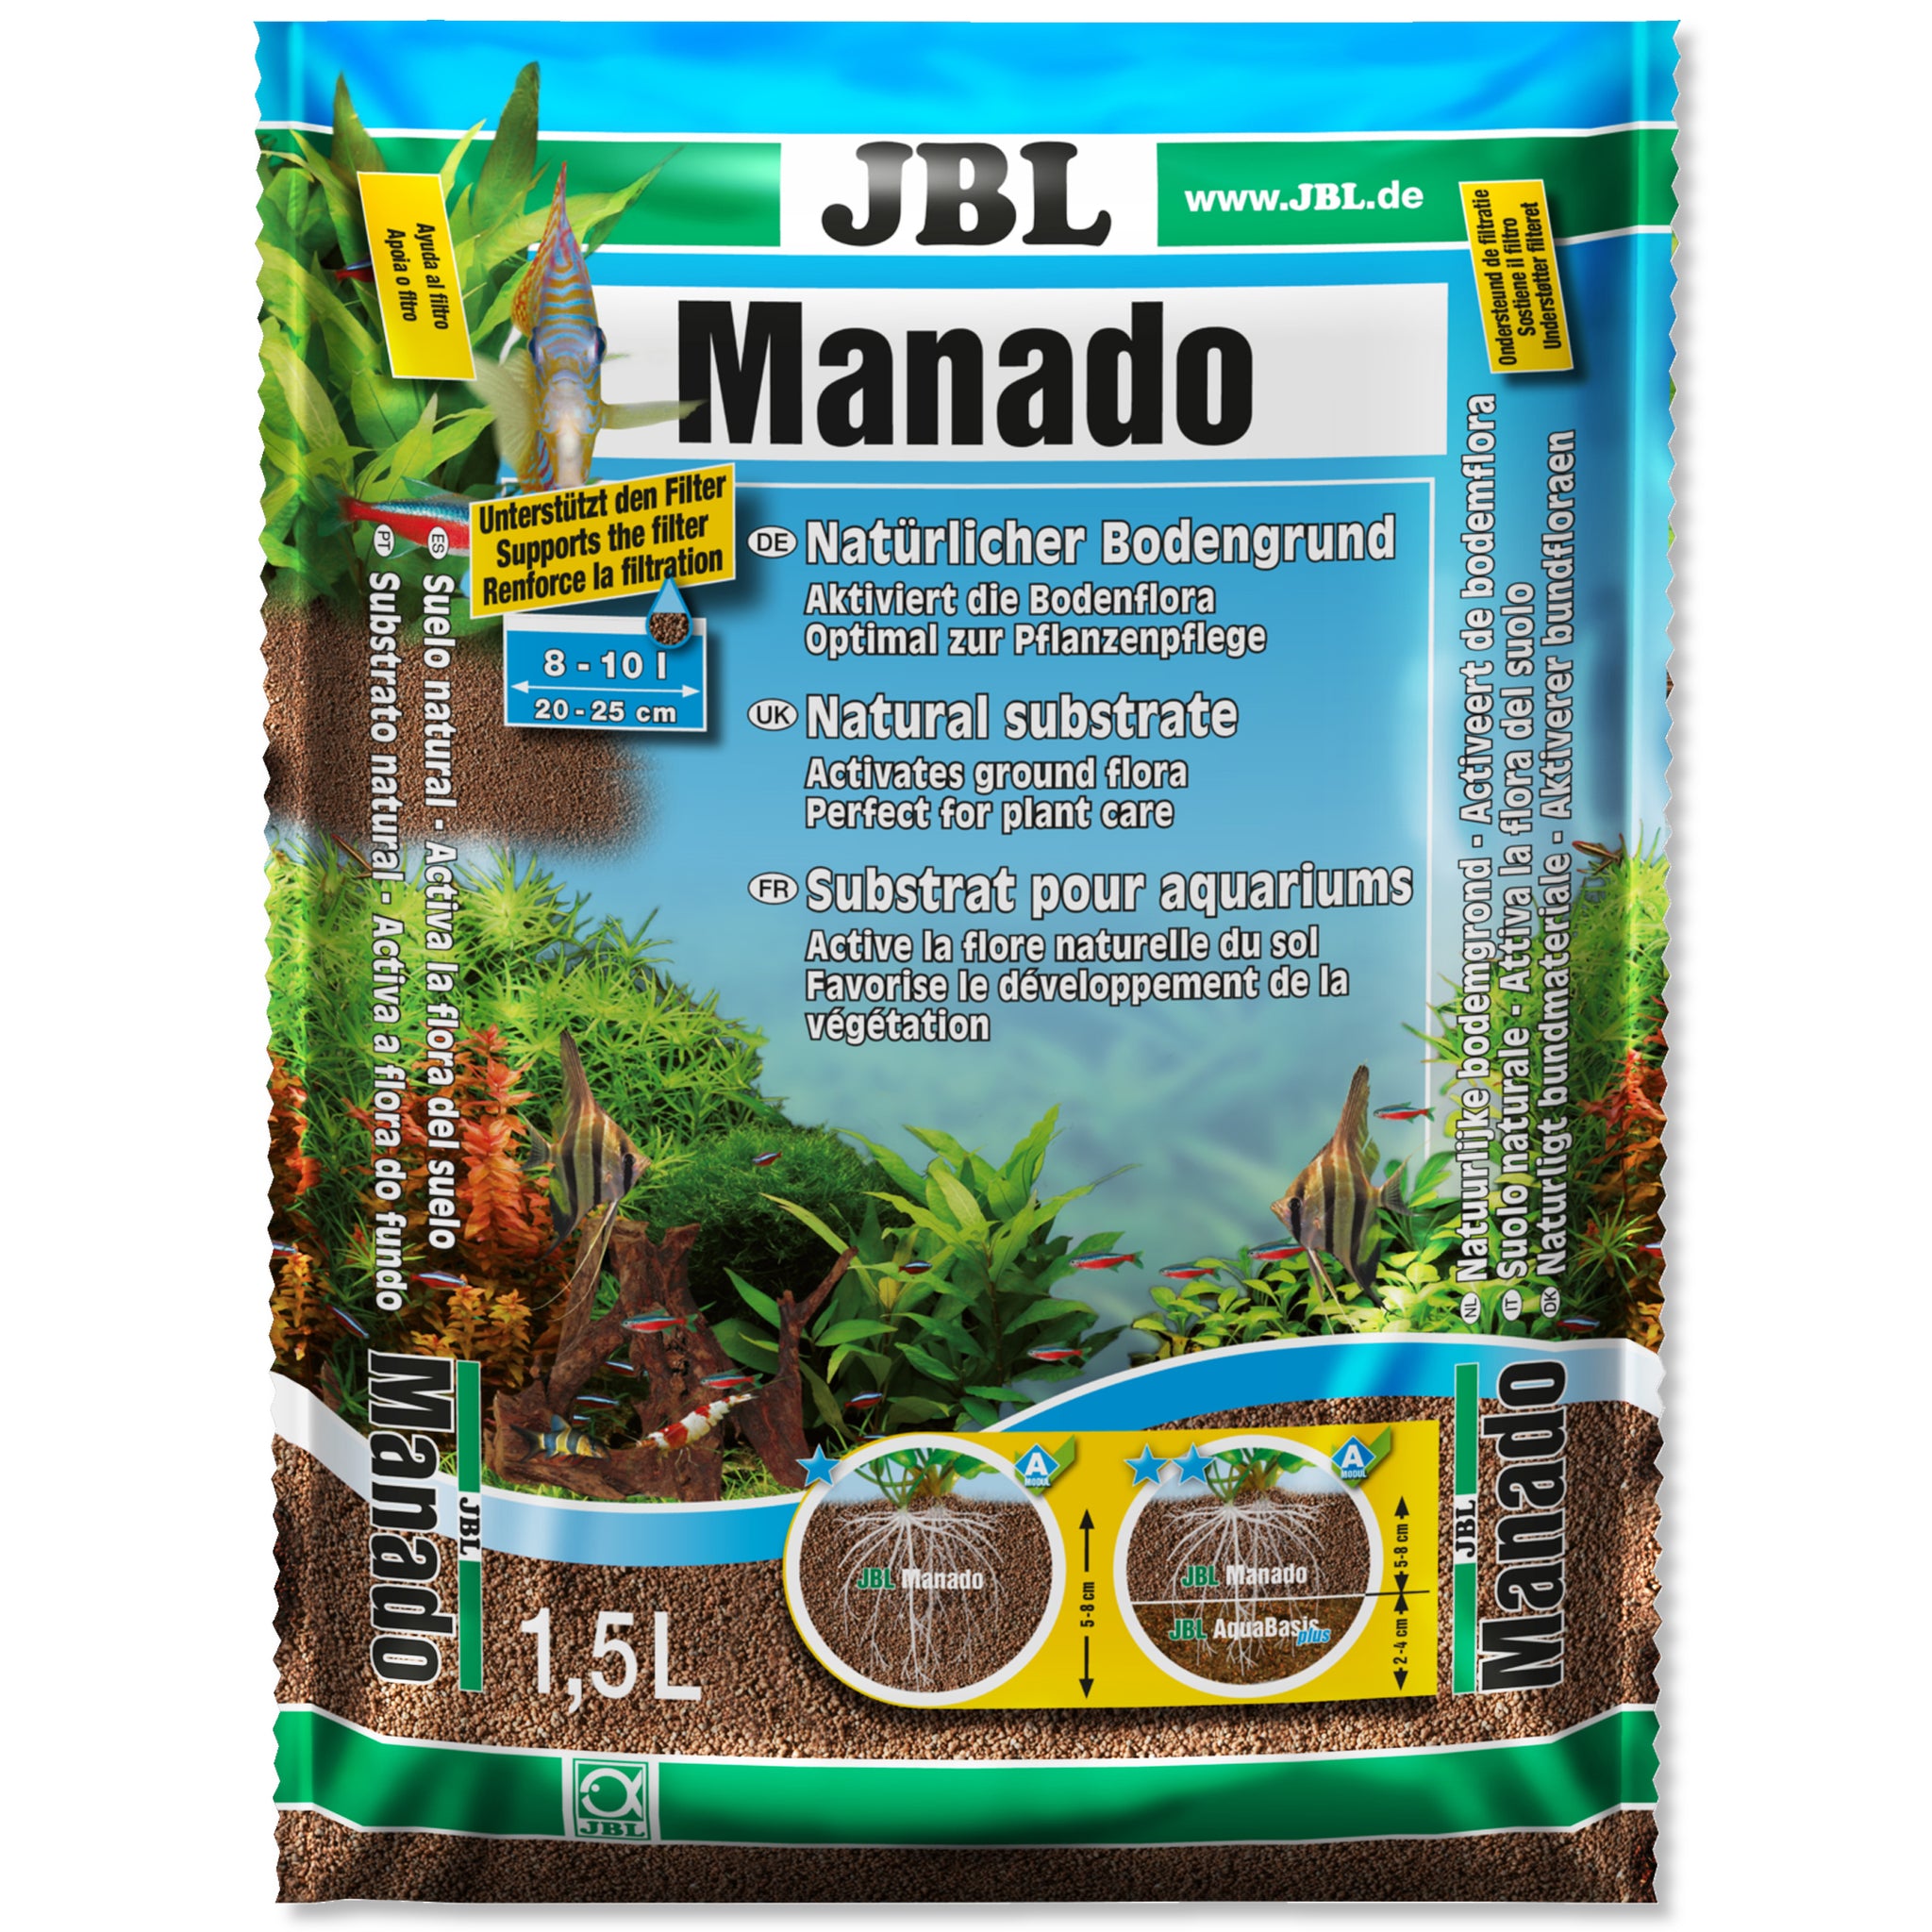 JBL MANADO DARK NATURAL SUBSTRATE